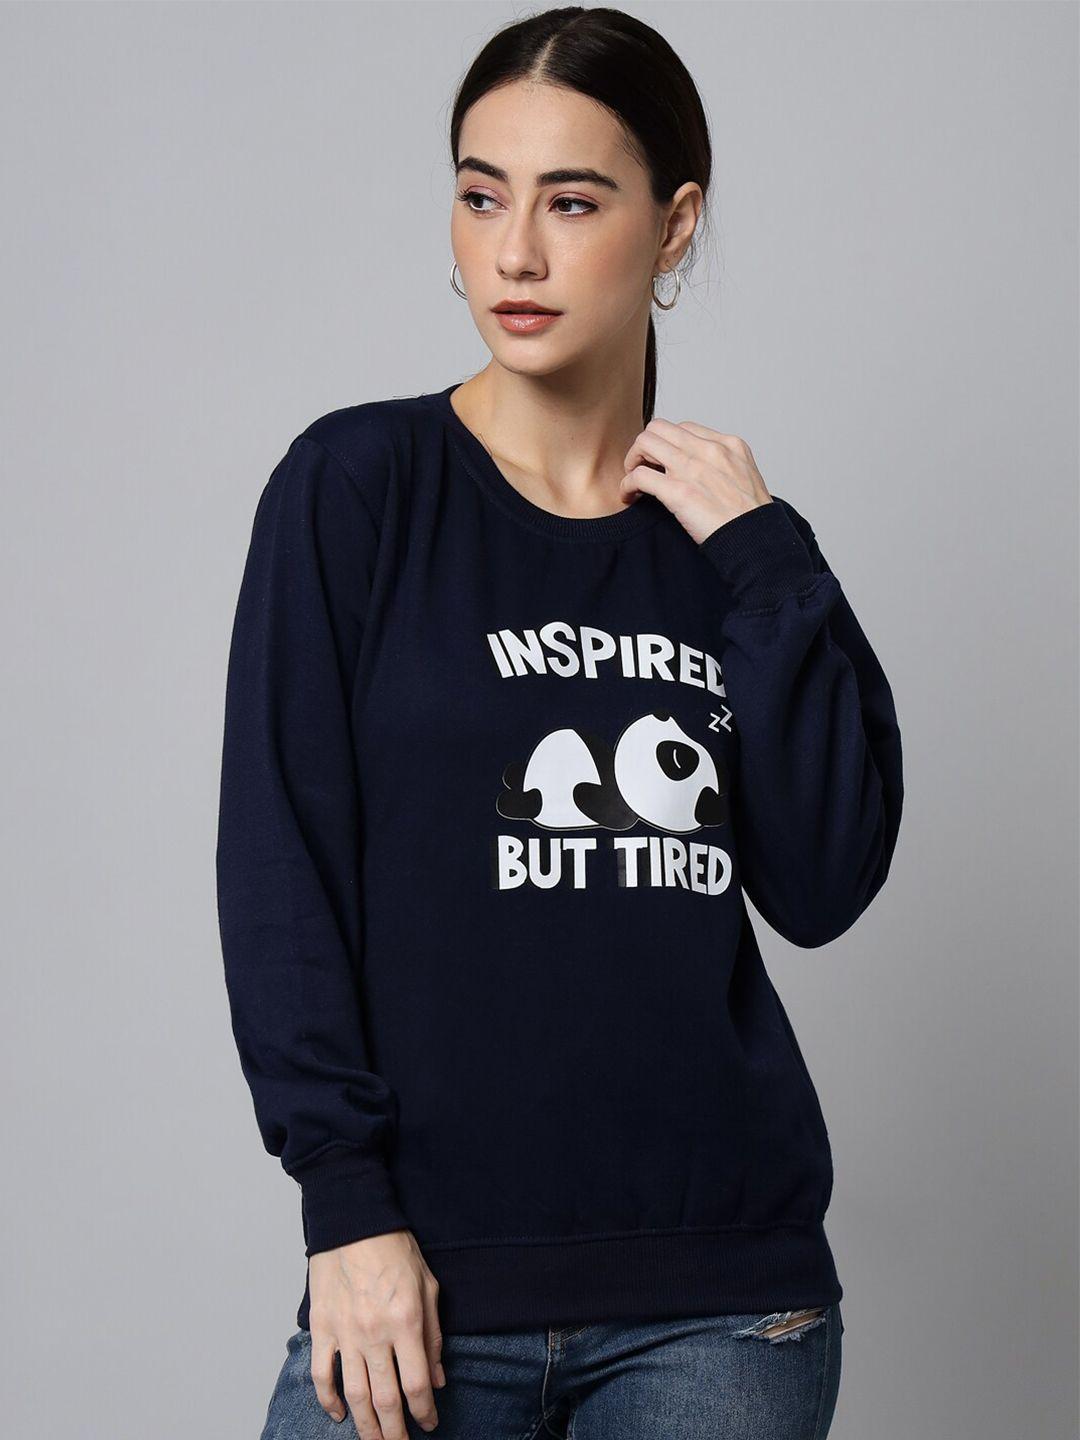 ewools typography printed sweatshirt